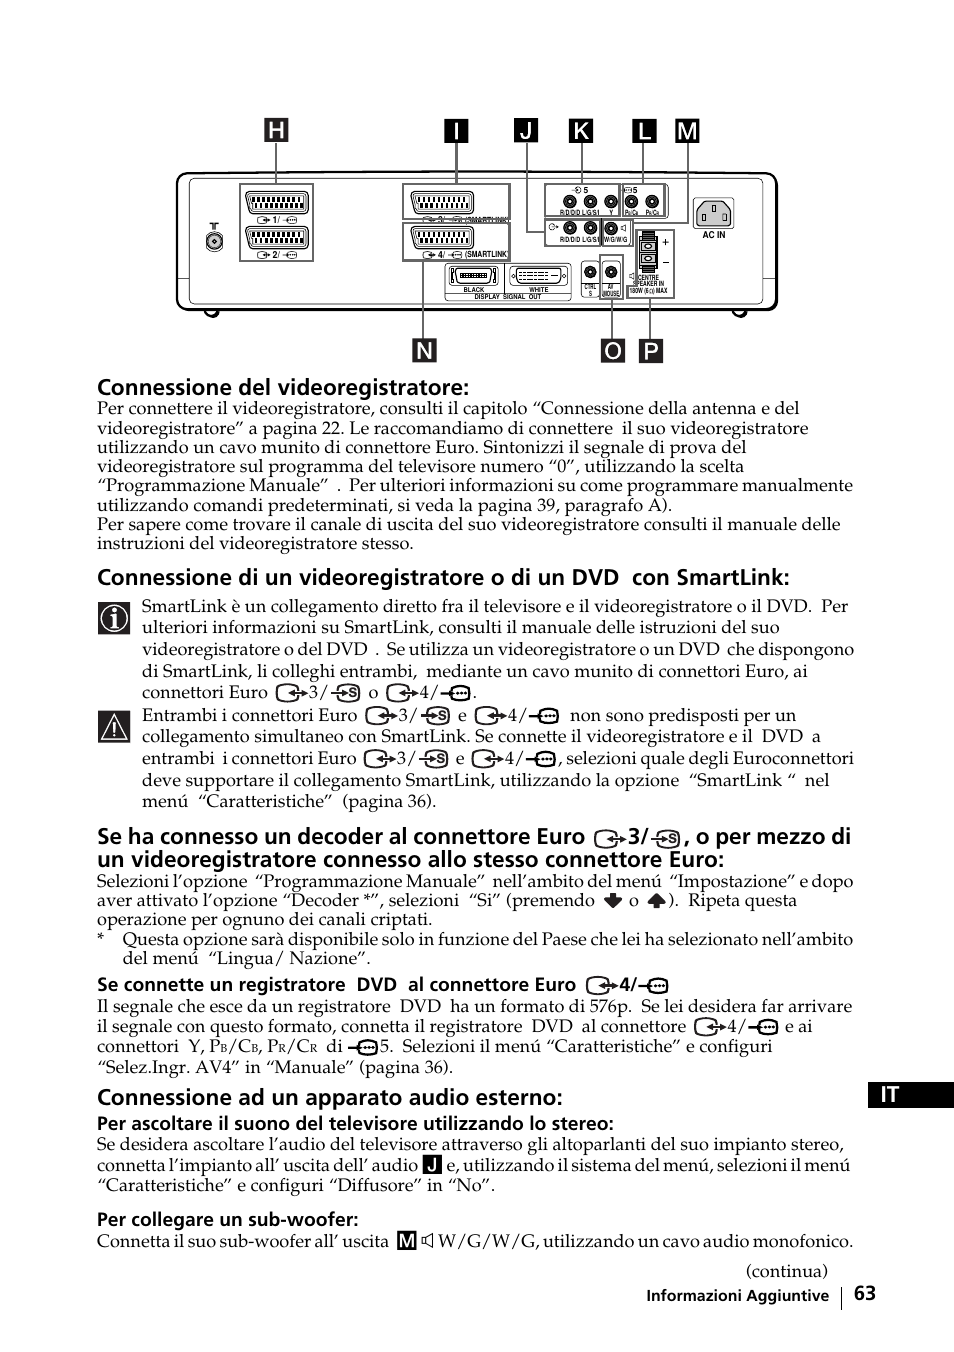 It connessione del videoregistratore, Connessione ad un apparato audio esterno, Per collegare un sub-woofer | Continua) | Sony KE-42MR1 Manuale d'uso | Pagina 64 / 302